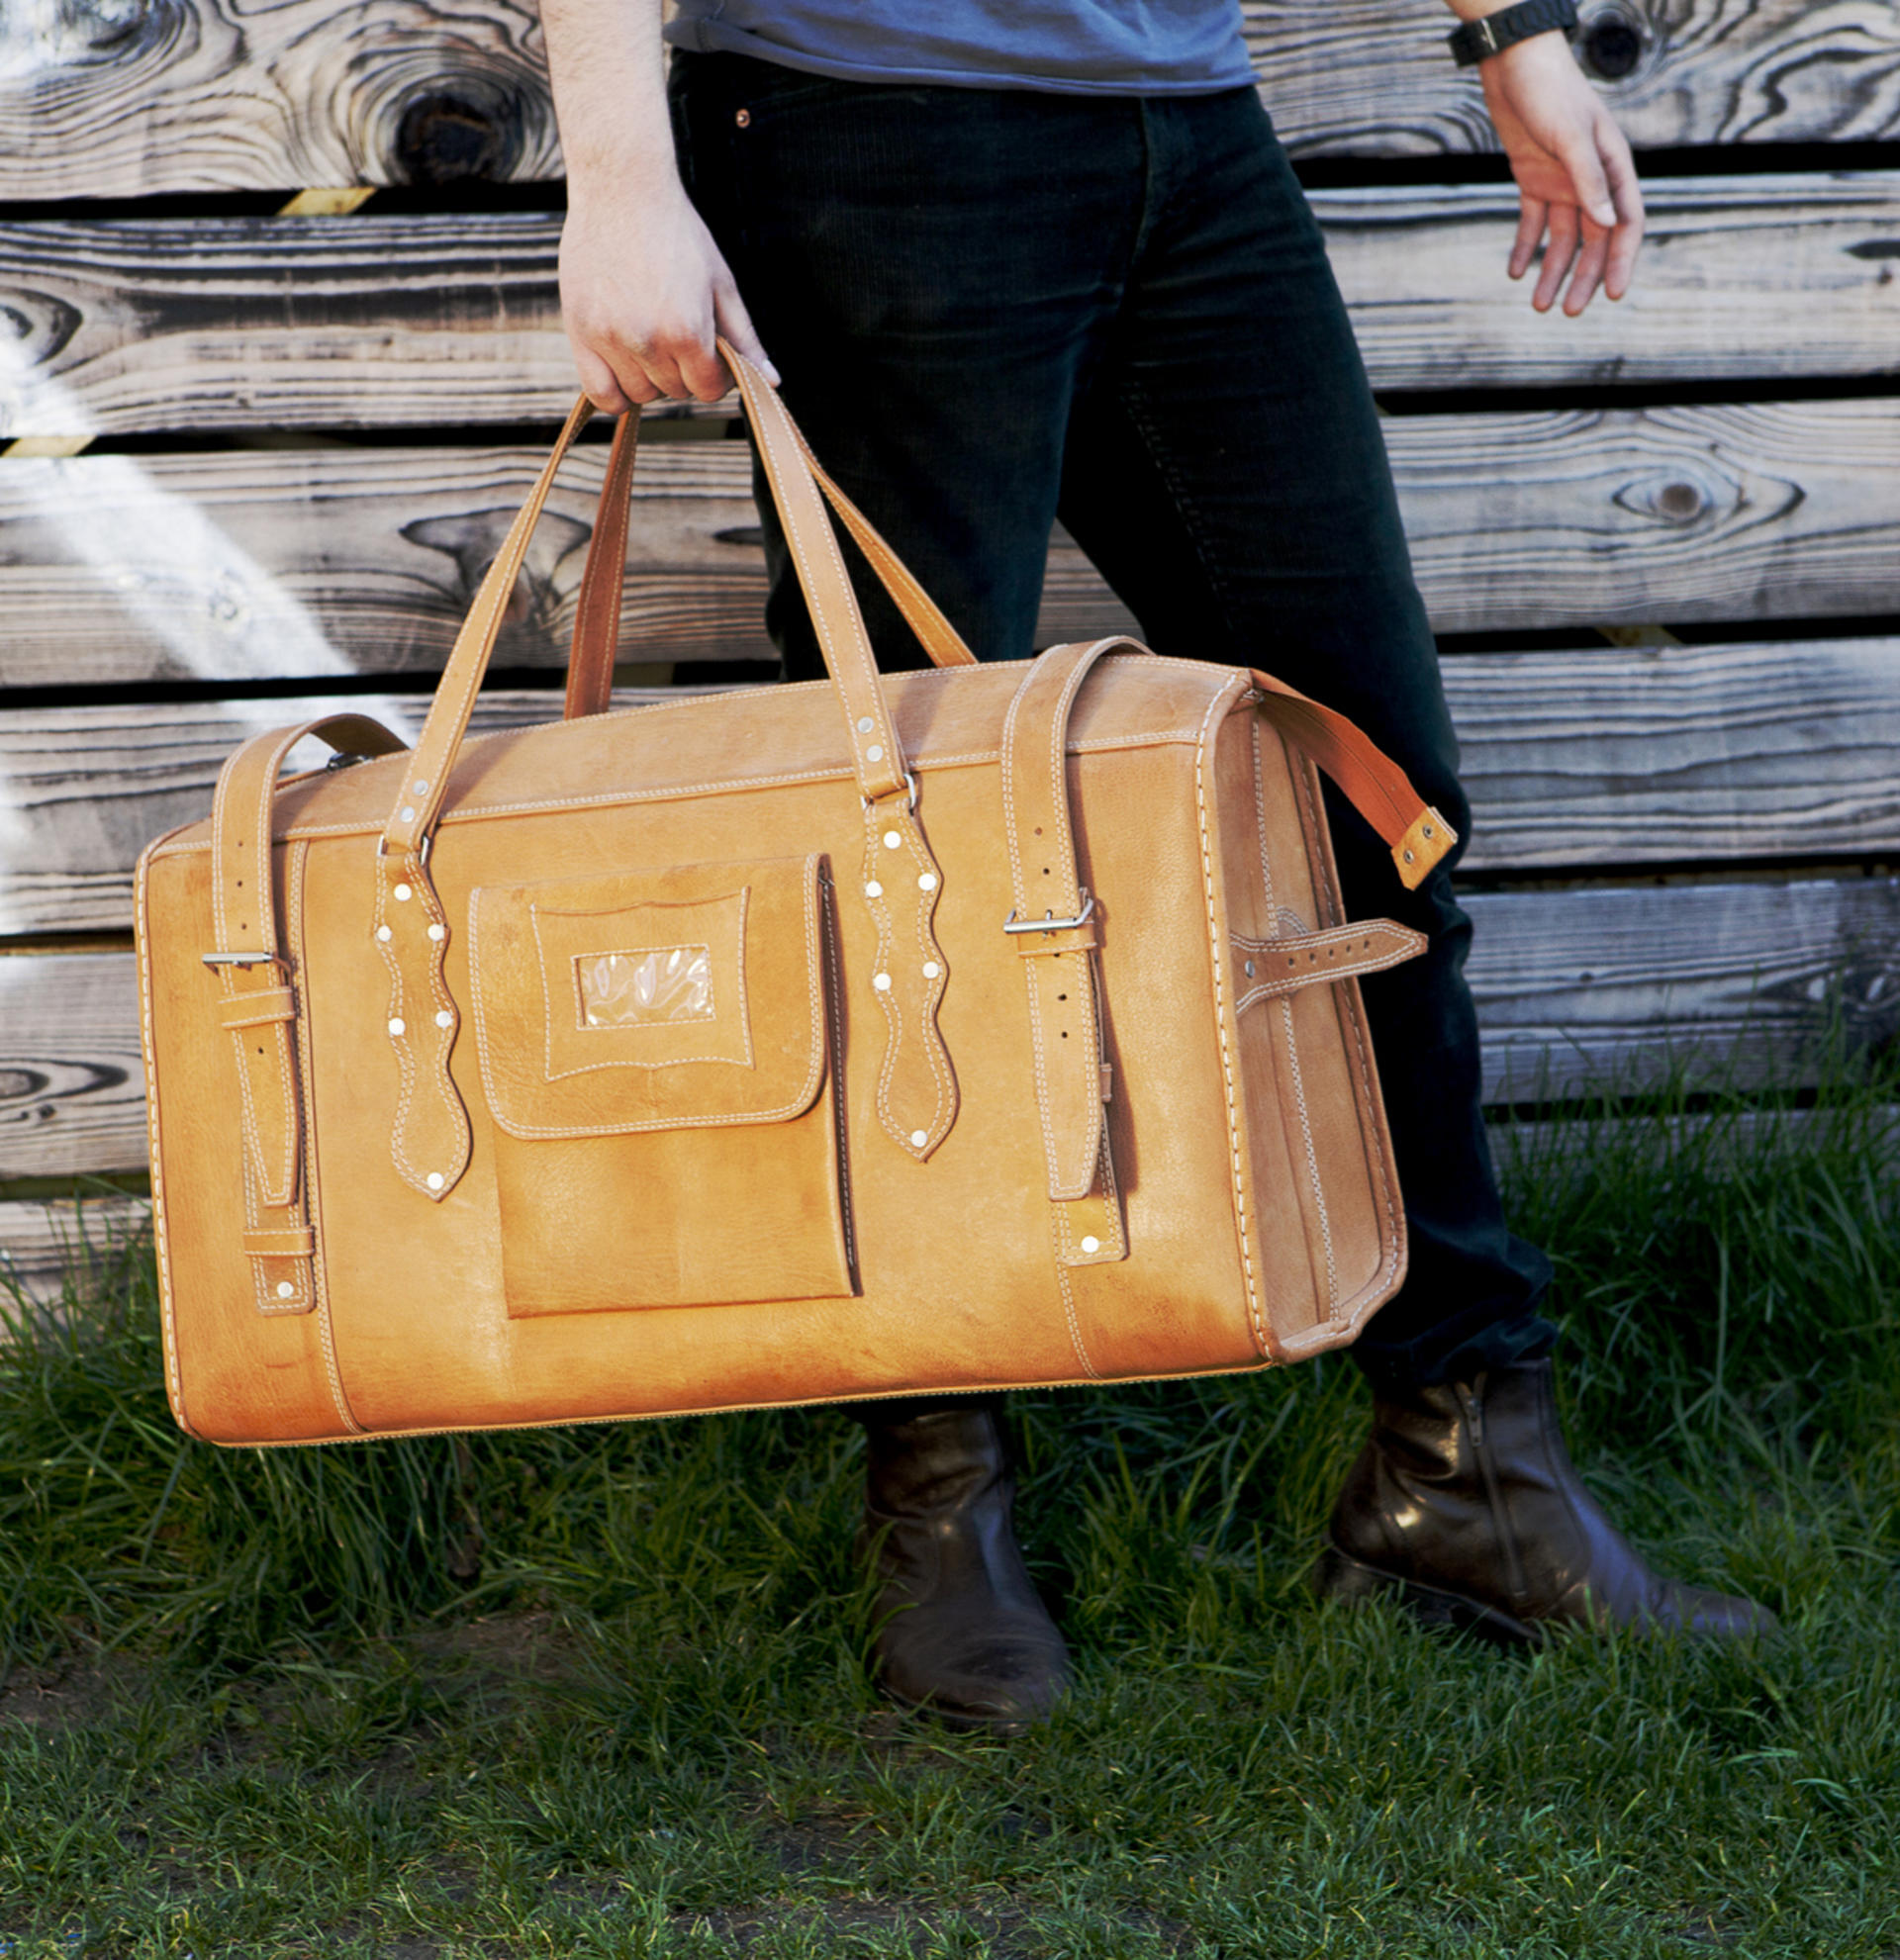 Grand sac de voyage en vrai cuir - photo Ulrika Walmark